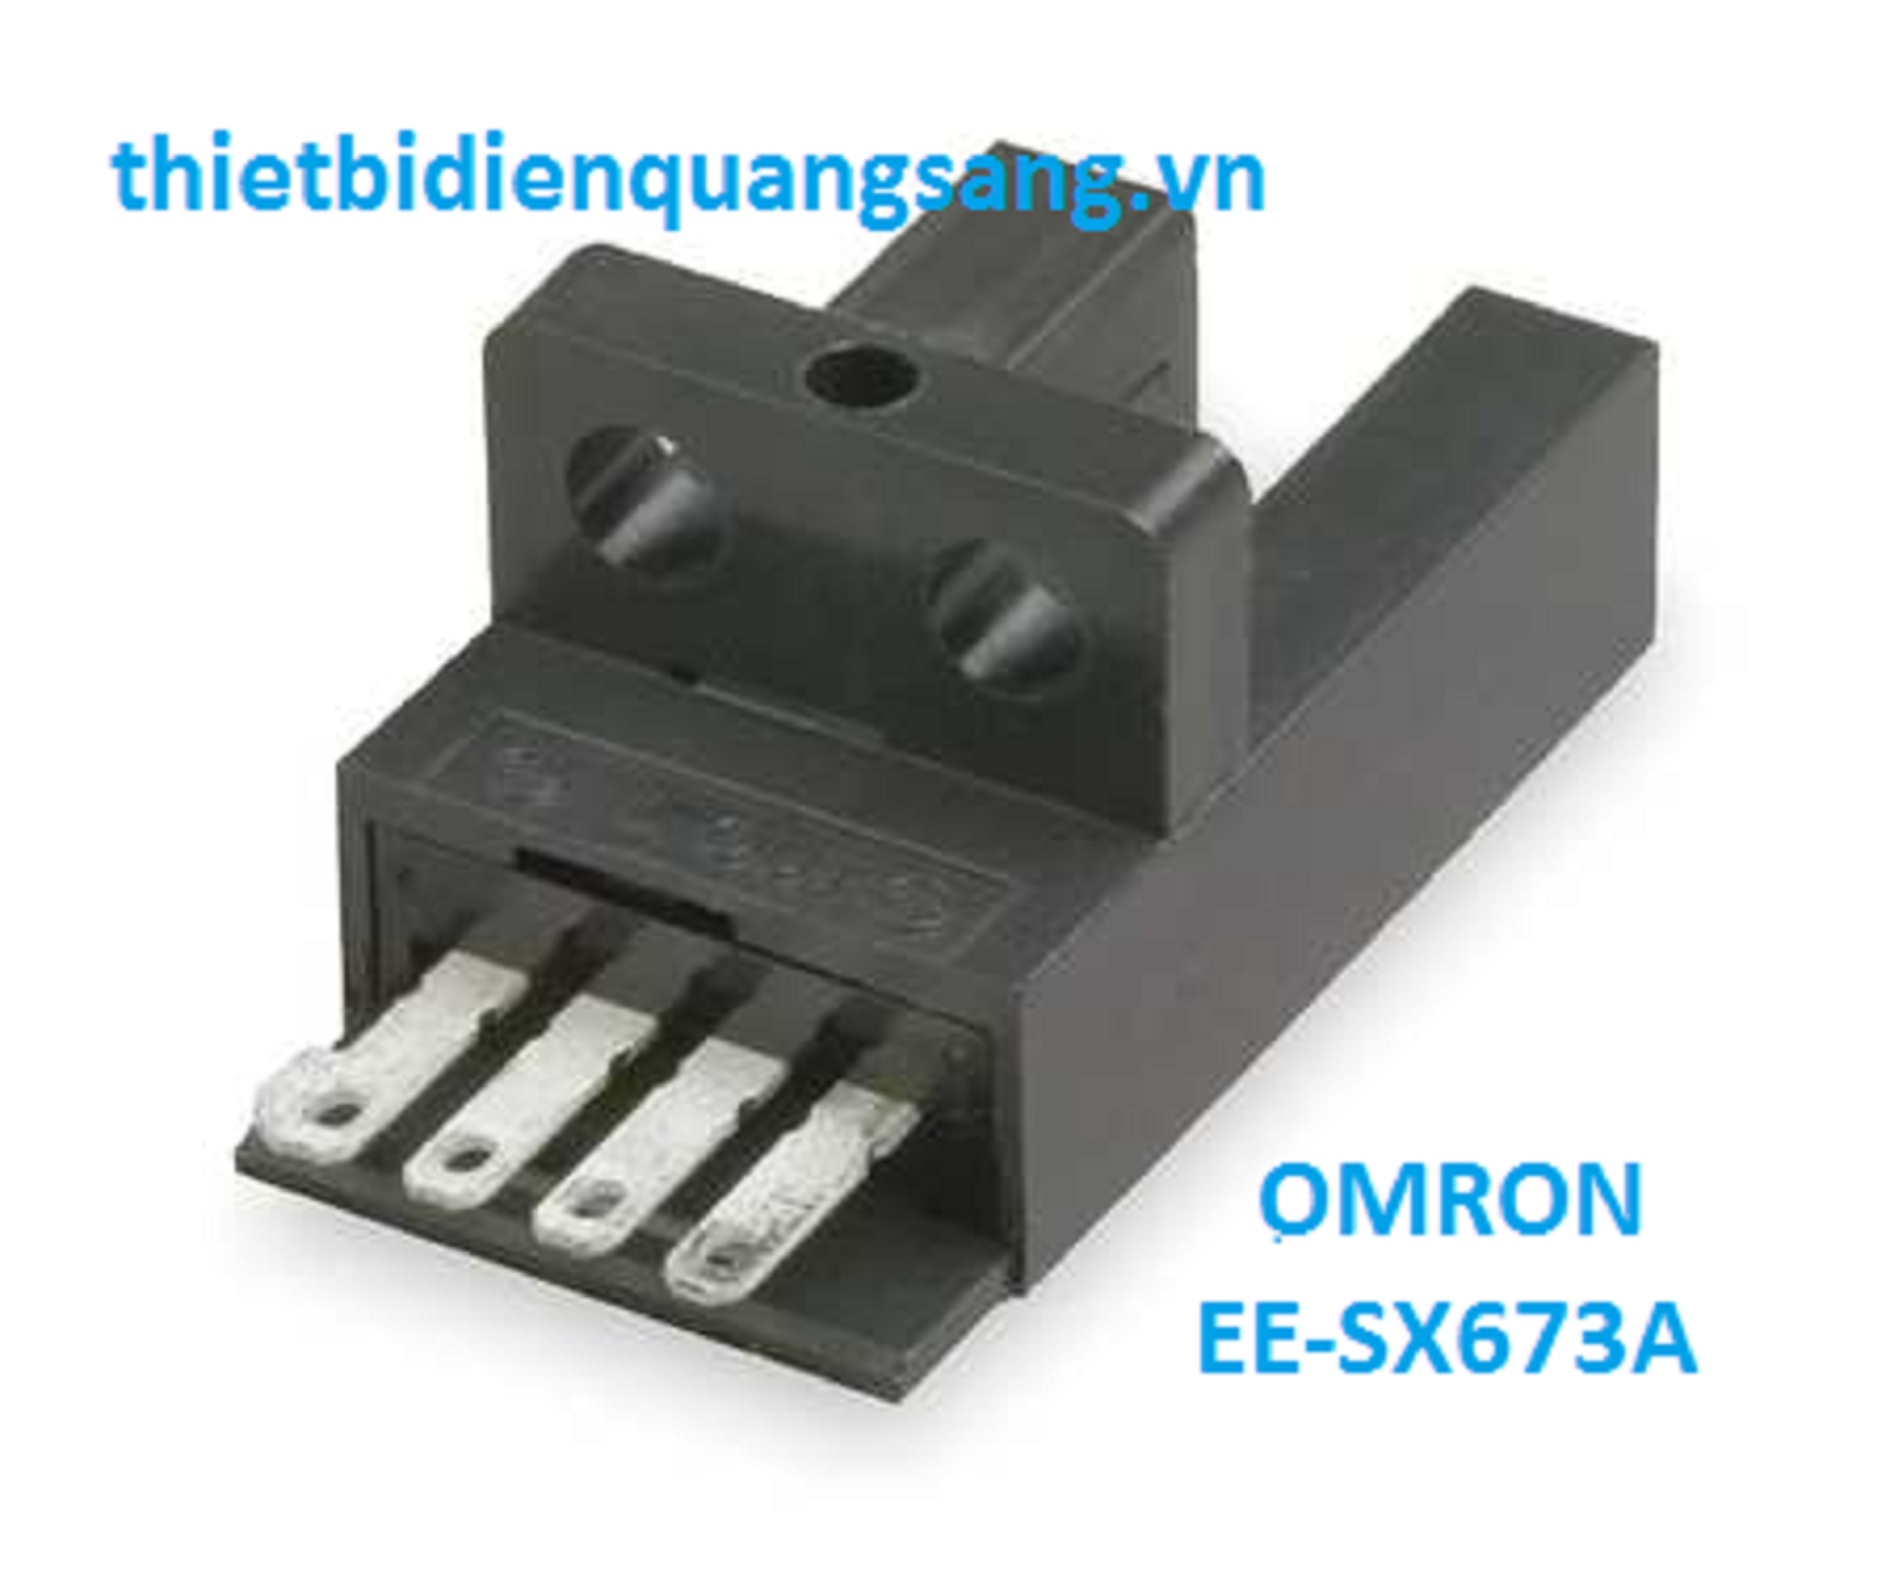 Omron EE-SX673A